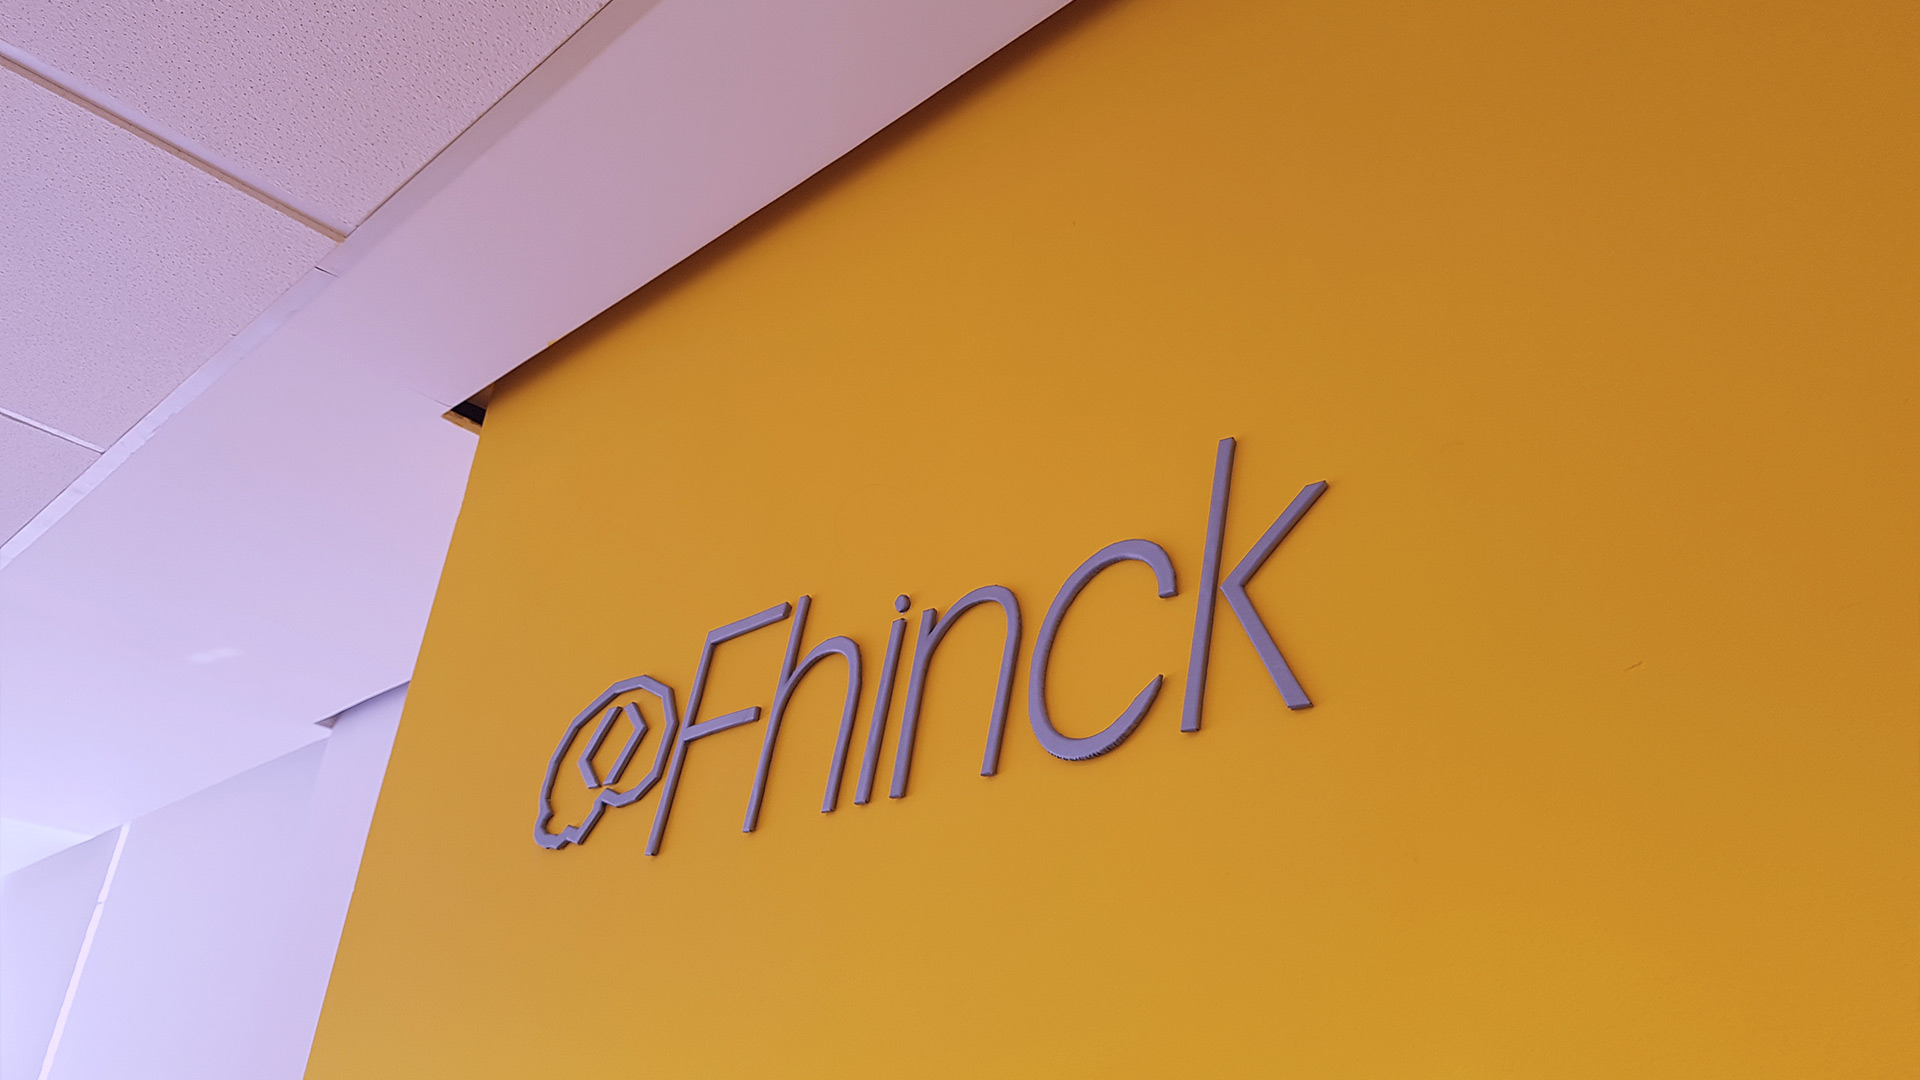 Logo da Fhinck na parede amarela